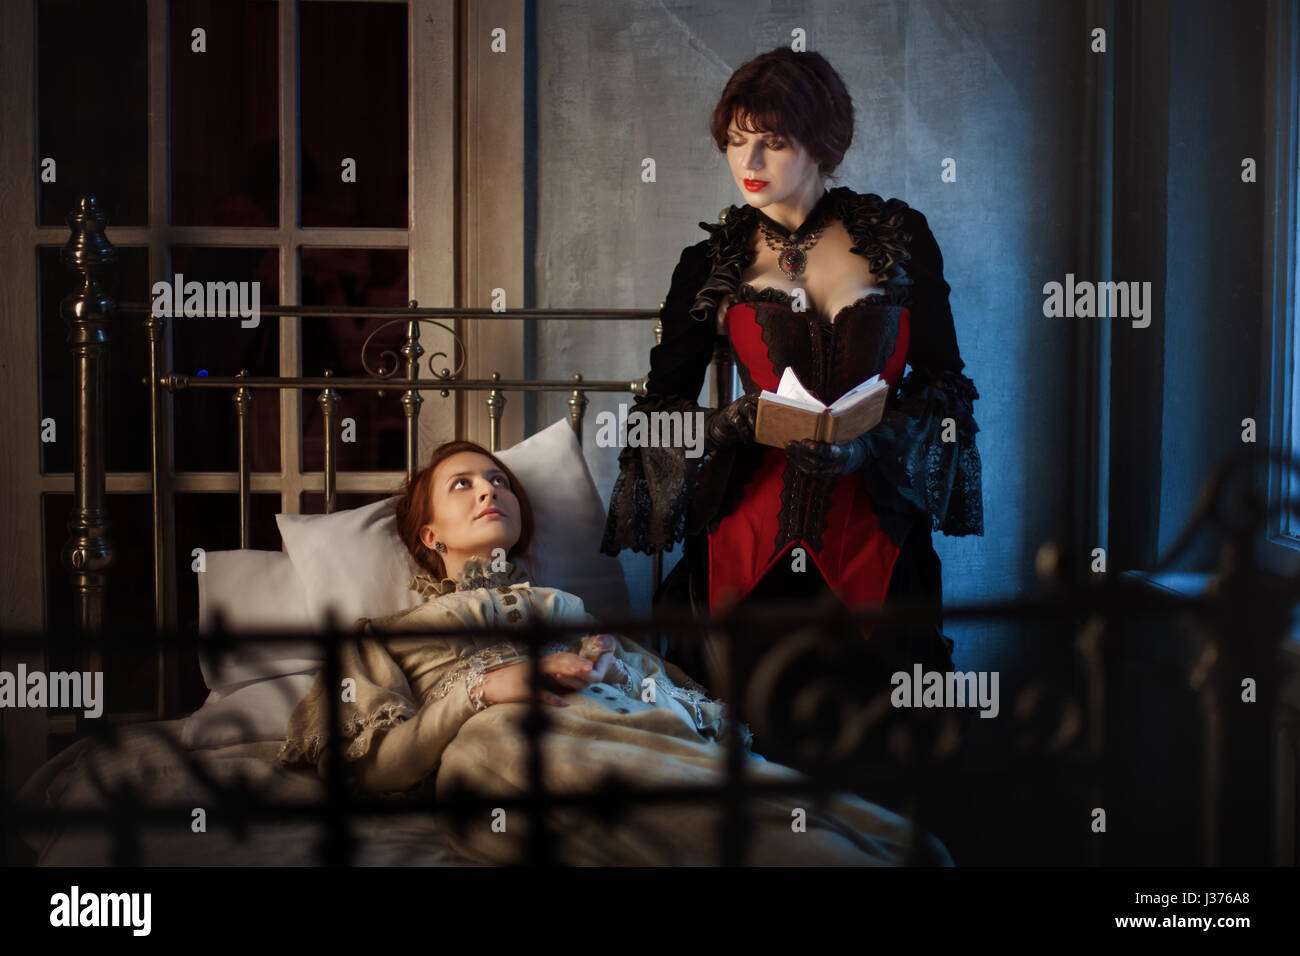 Femme malade allongé sur un lit à côté d'une autre femme lisant un livre, dans le style gothique rétro. Banque D'Images